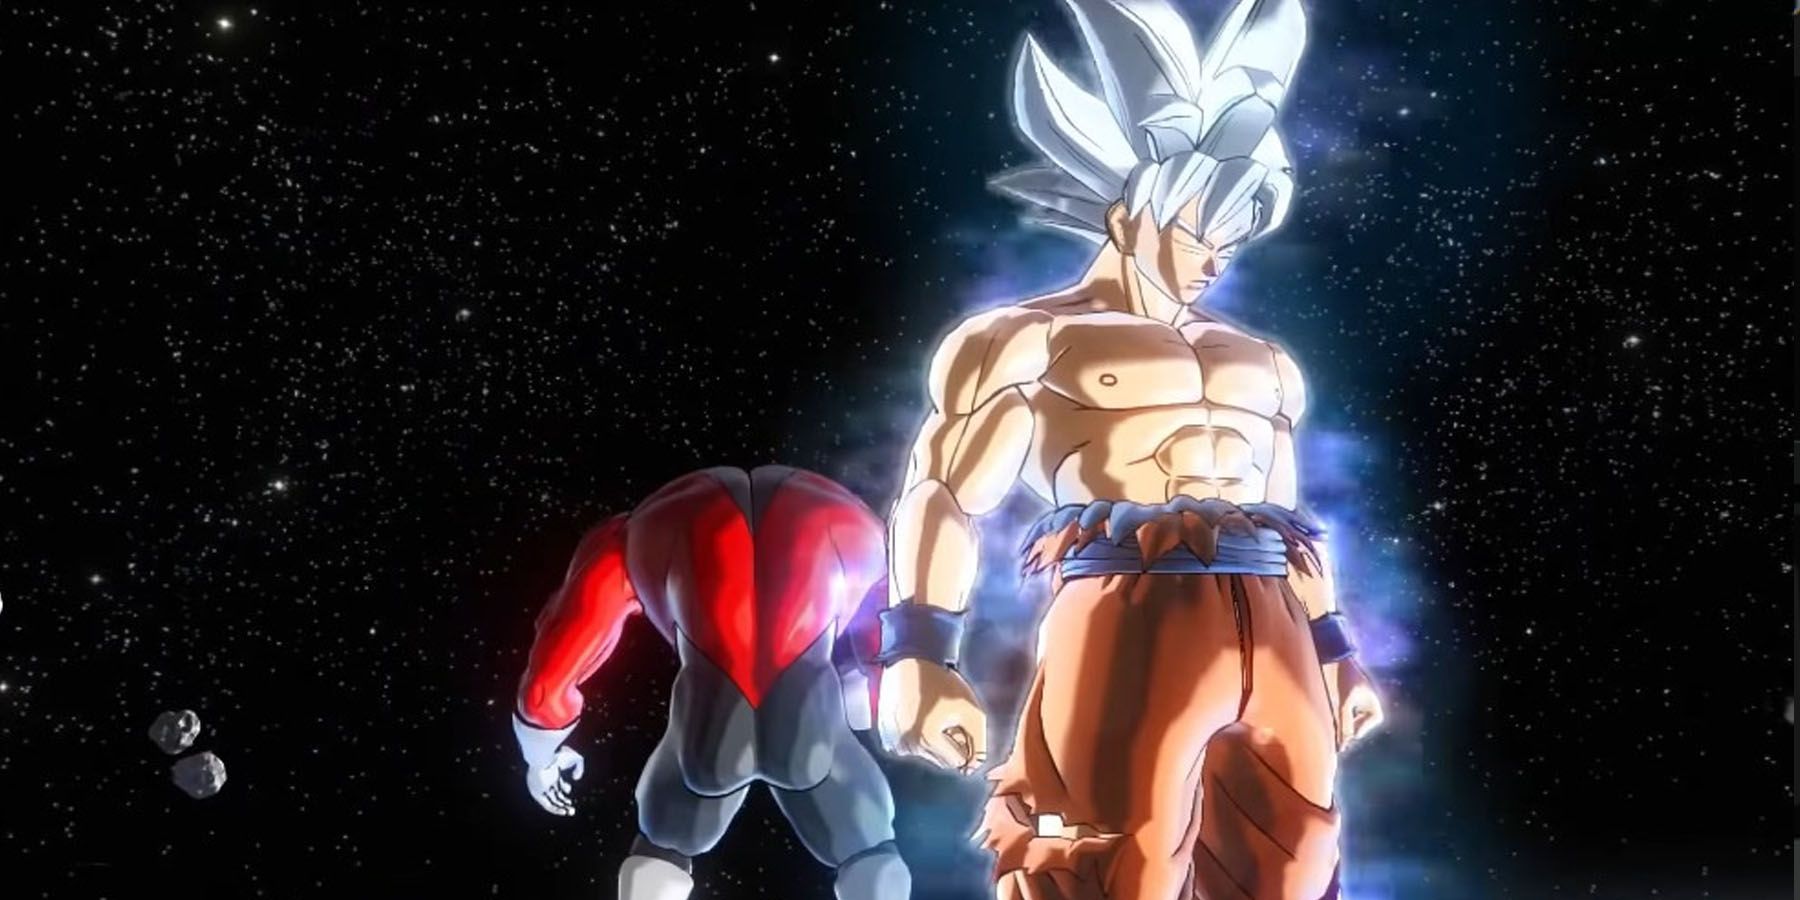 Goku in Ultra Instinct in front of Jiren